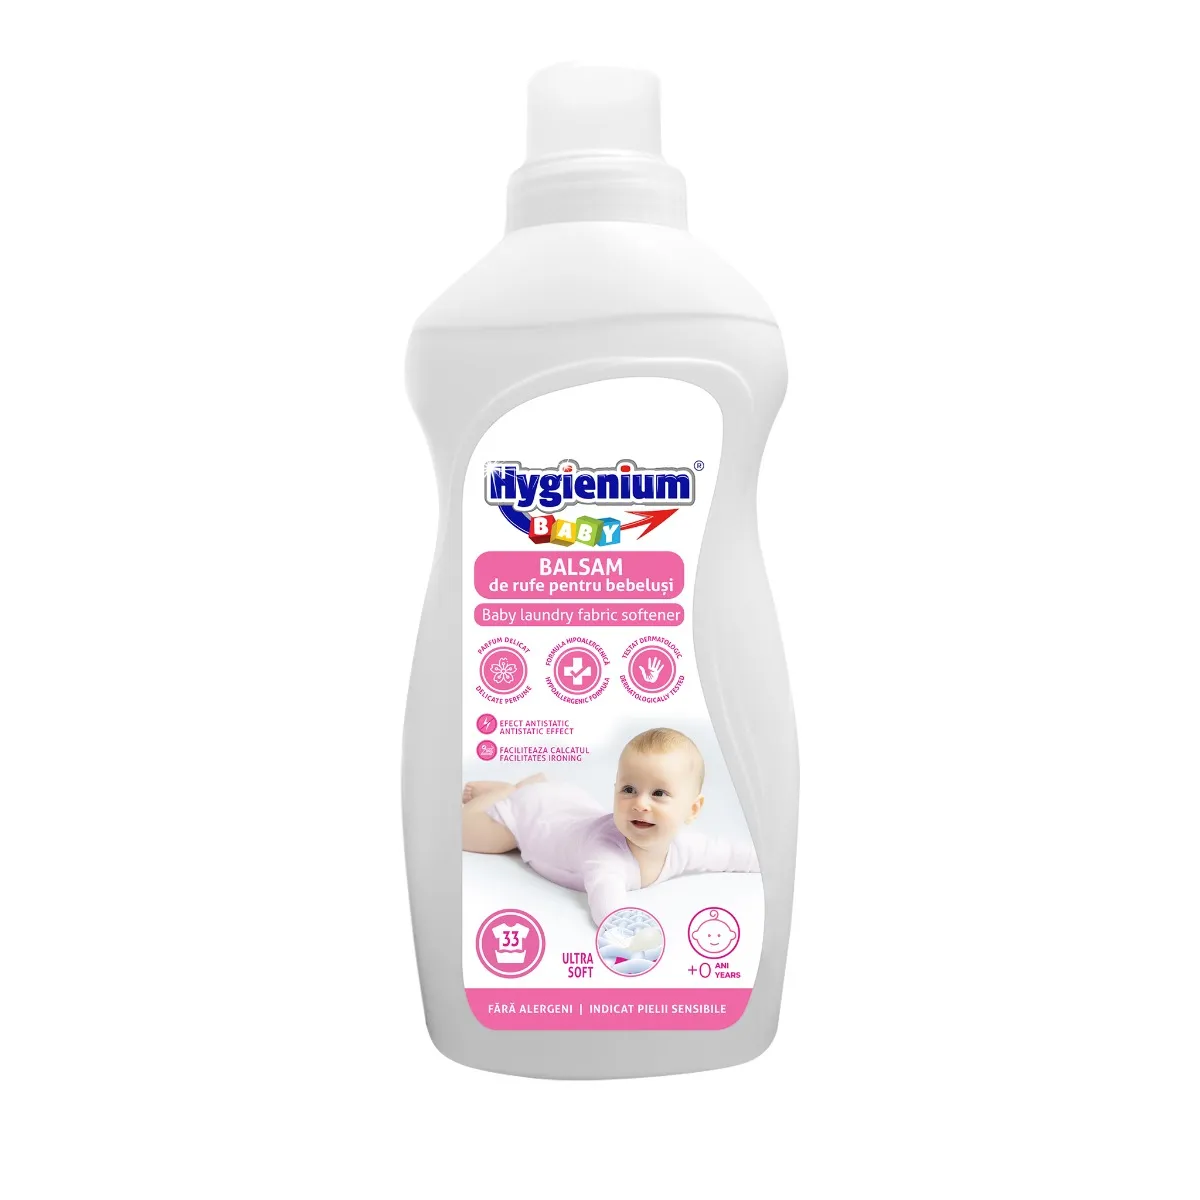 Balsam de rufe pentru bebelusi, 1l, Hygienium